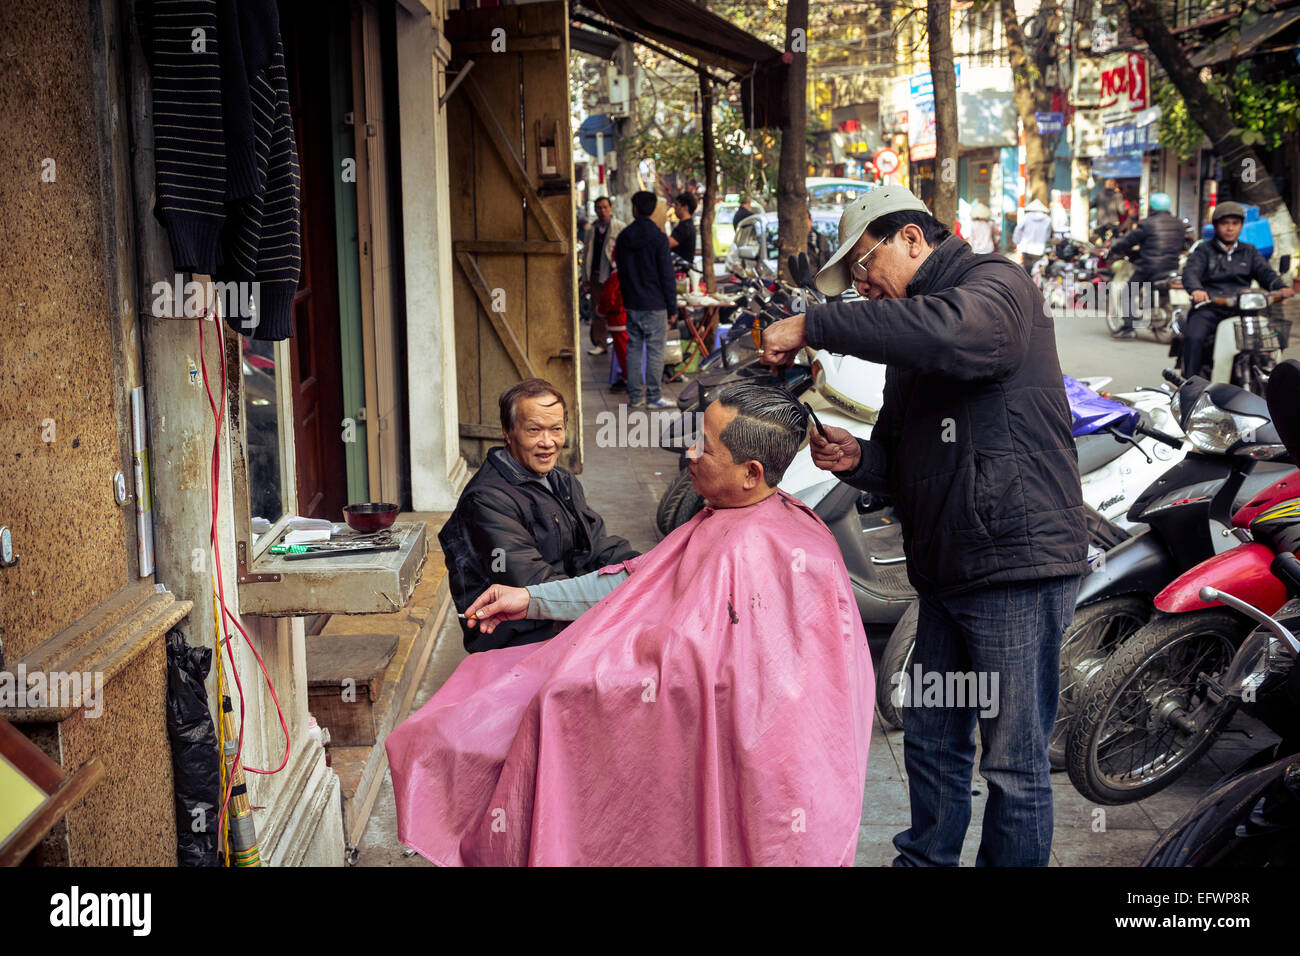 Salon de coiffure de la rue dans le vieux quartier de Hanoi, Vietnam. Banque D'Images